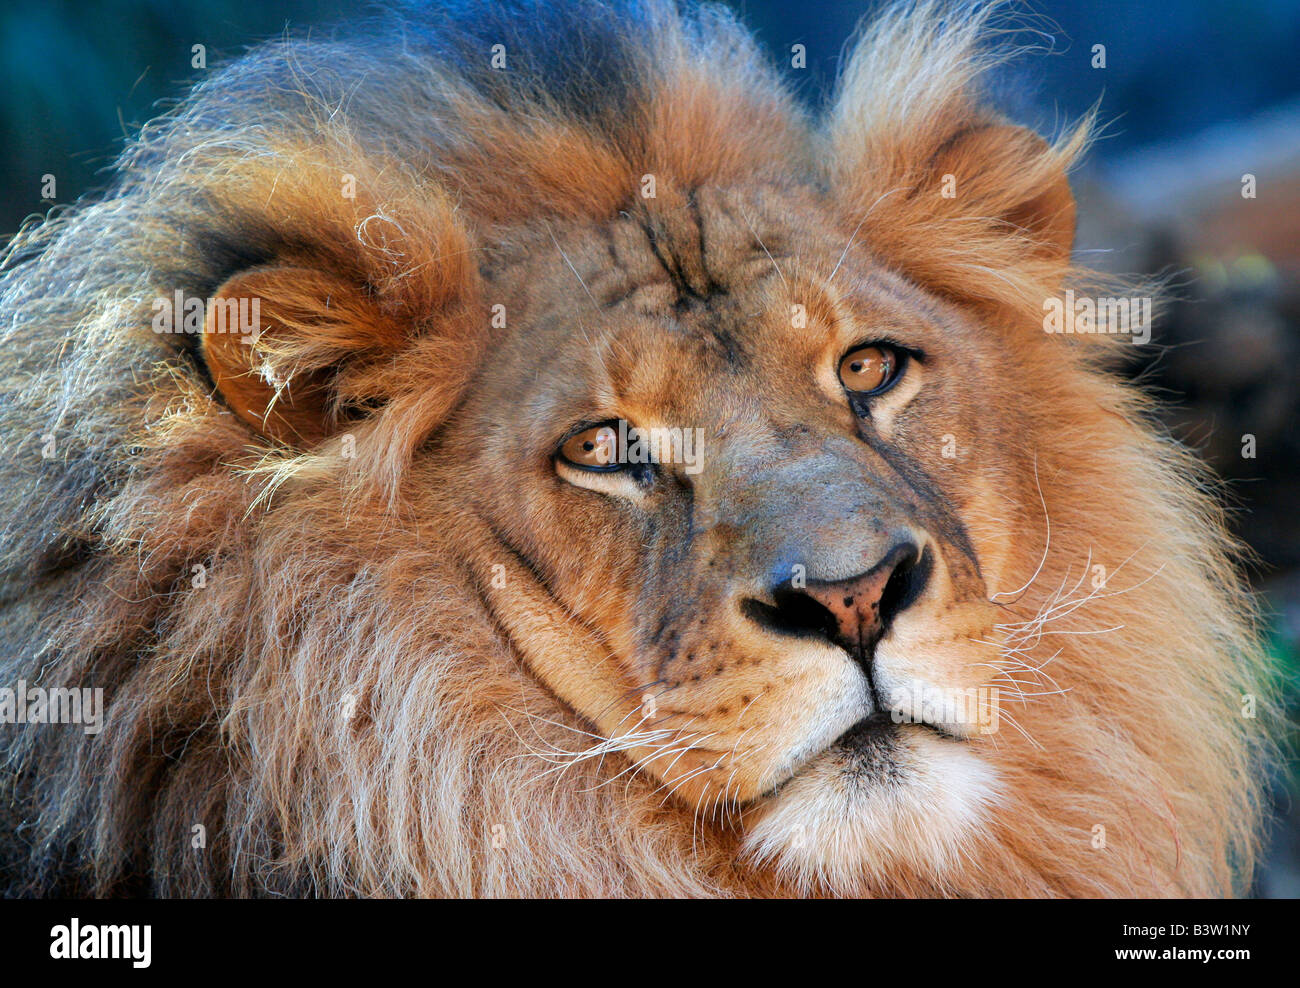 Zoo wilde Tiere große Katze Toronga Park Gefangenschaft Löwe Porträt Nahaufnahme Gesicht Schnurrhaare Stockfoto